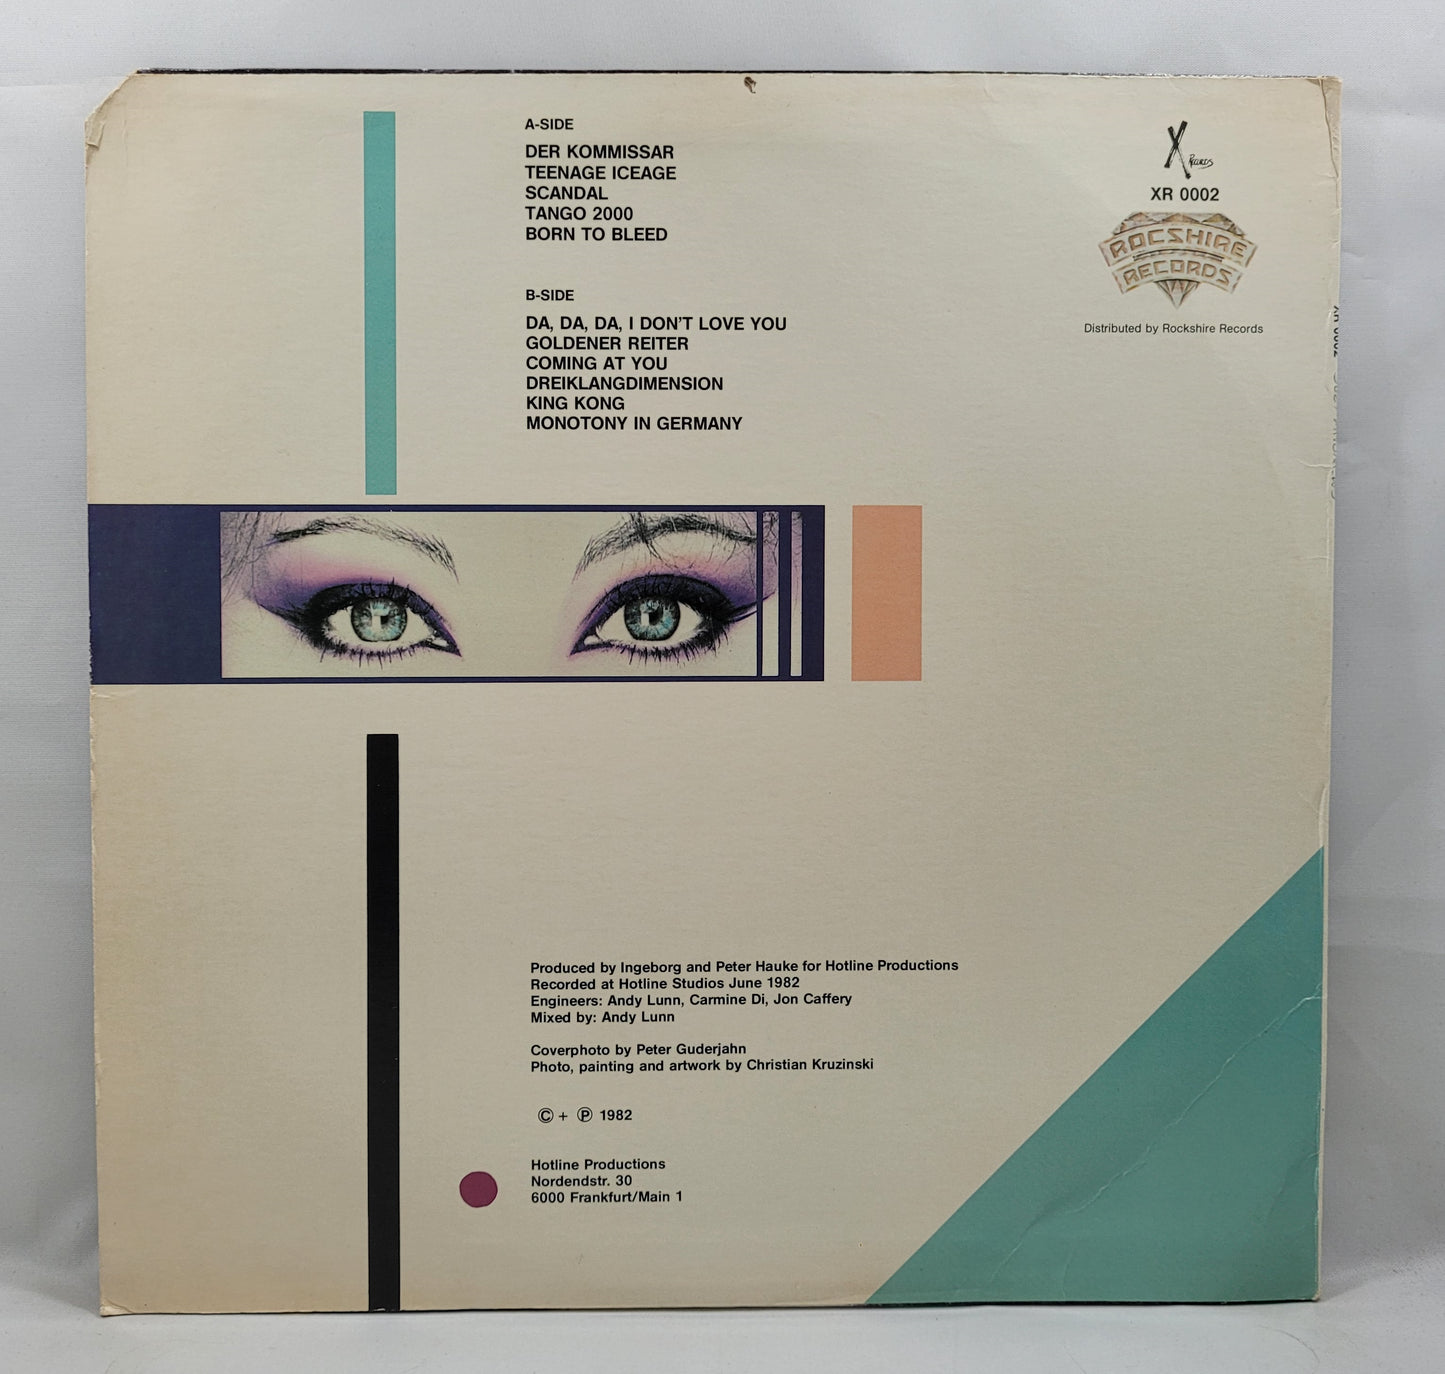 Suzy Andrews - Suzy Andrews [1982 Promo] [Used Vinyl Record LP]